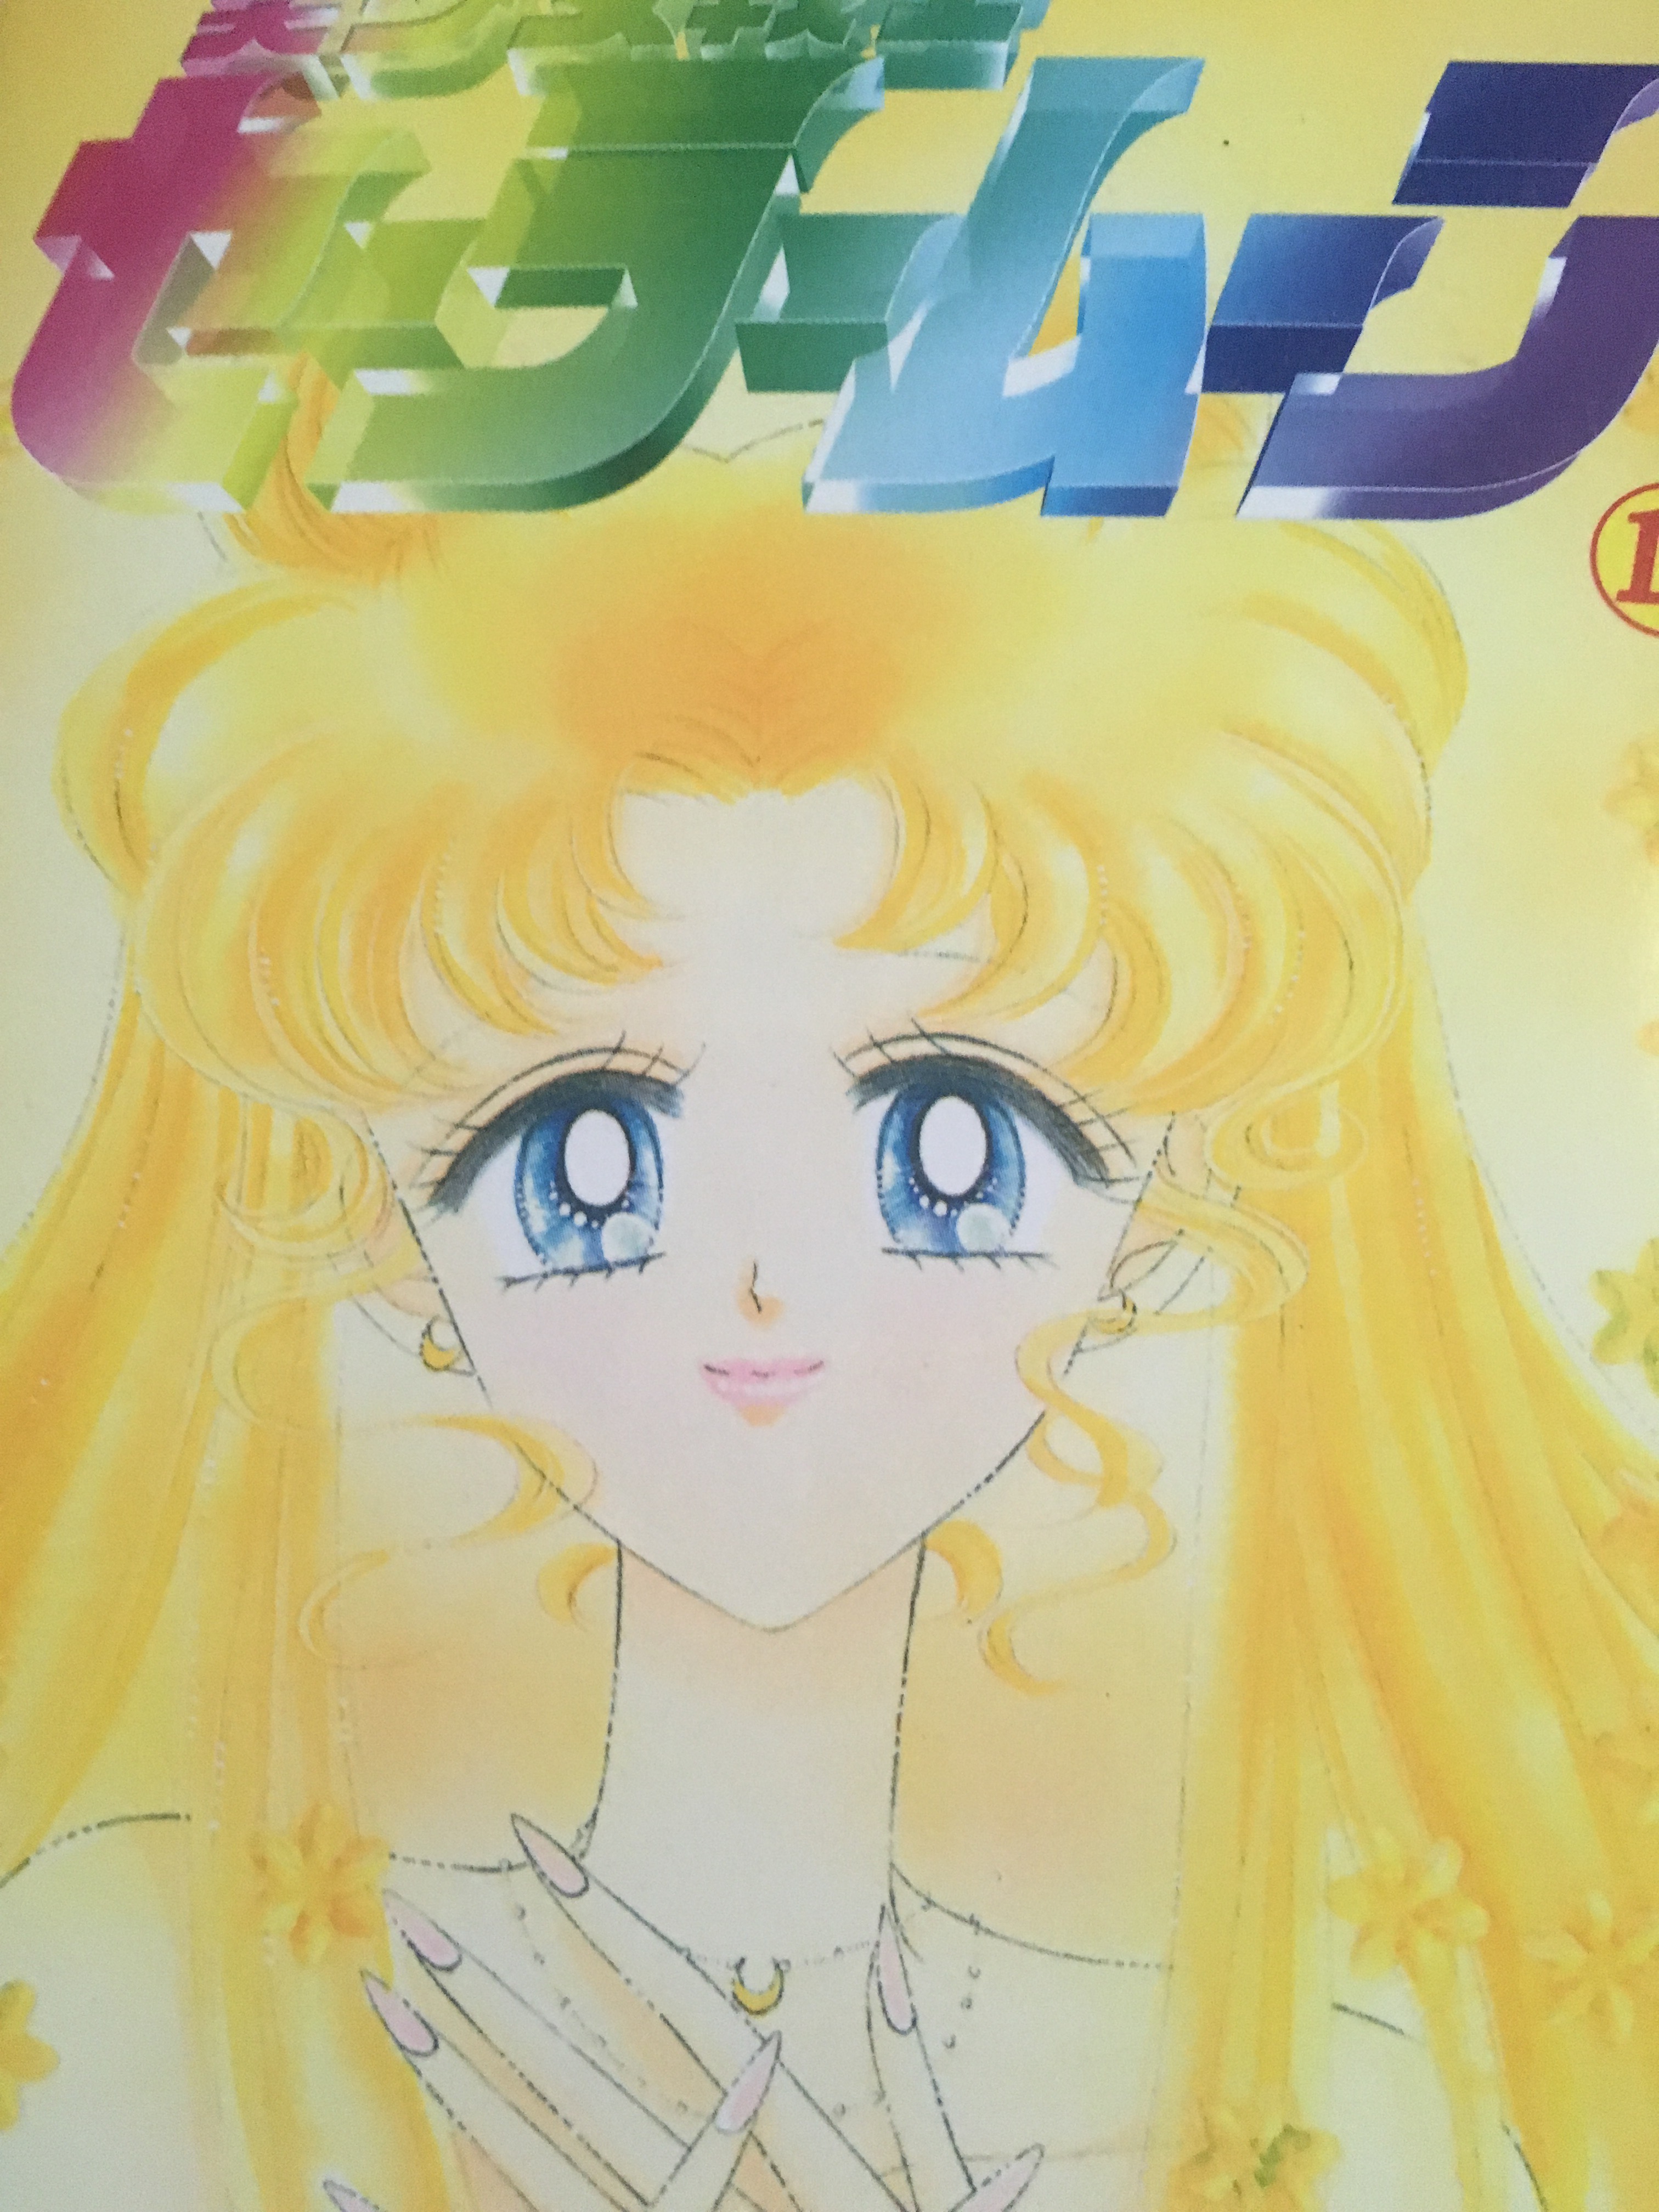 Bishoujo Senshi Sailor Moon Copyright Naoko Takeuchi, Kodansha